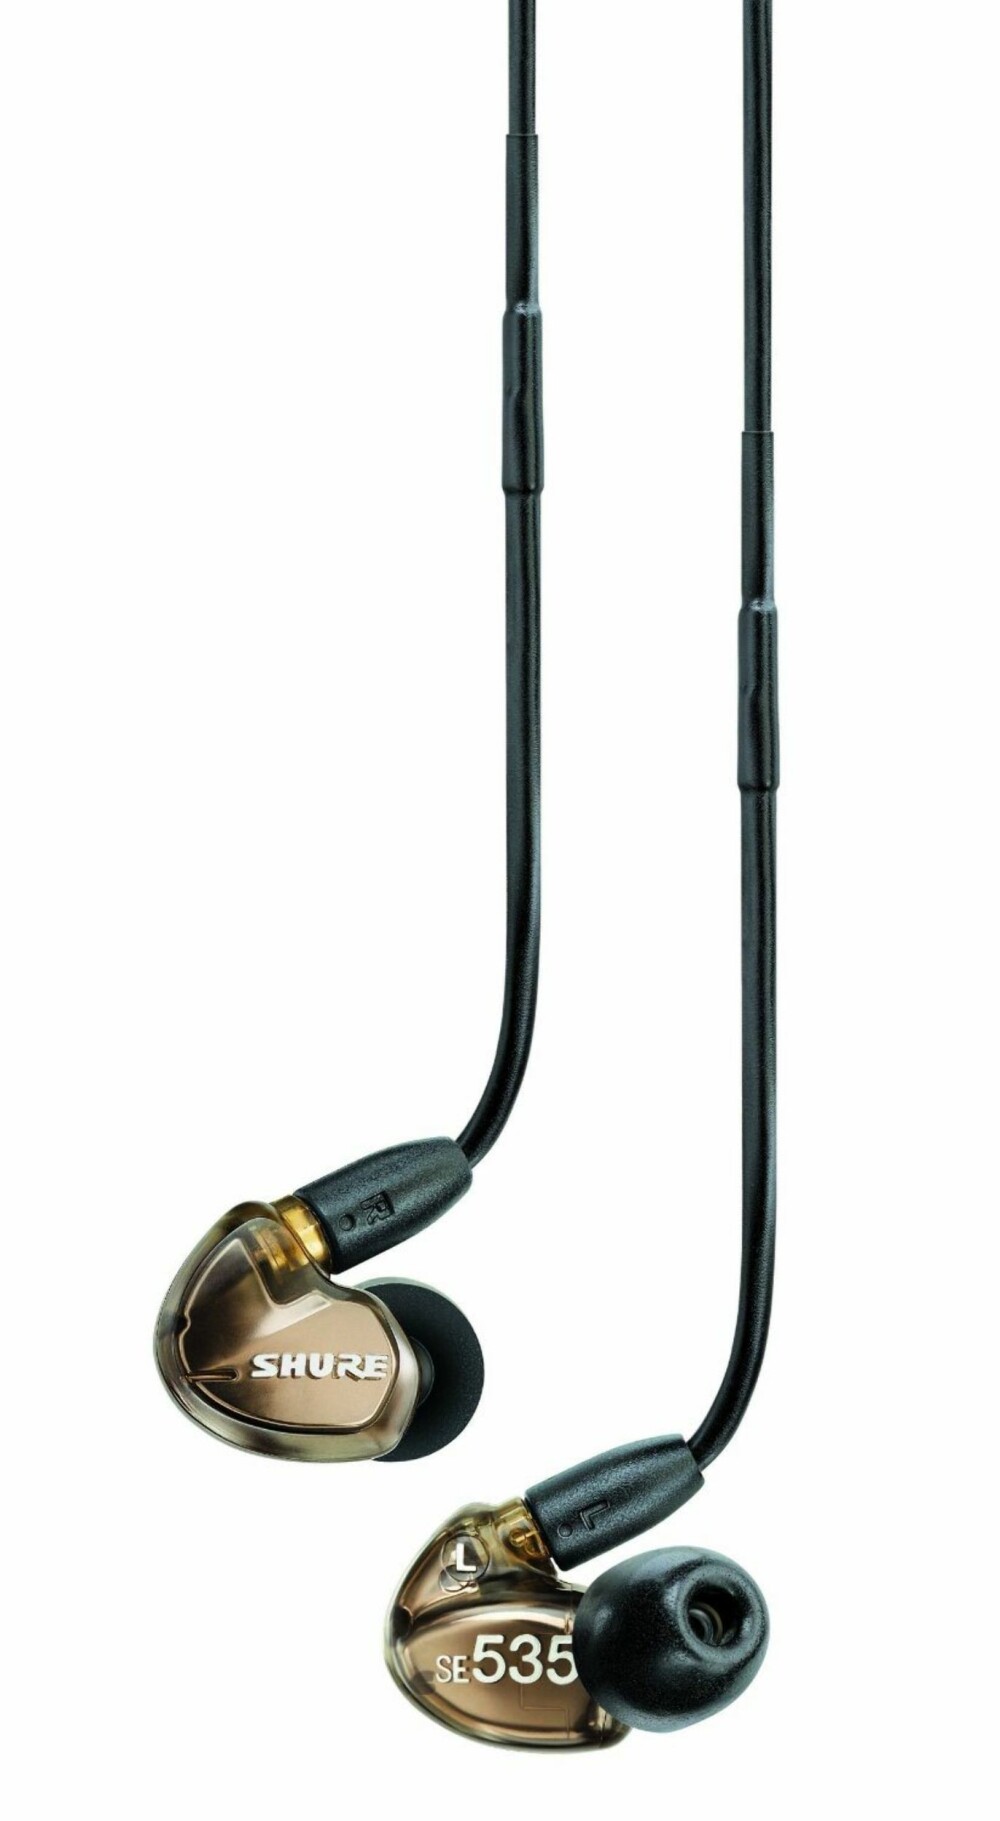 EKSEMPEL: Shure SE535 er en typisk i-øret øretelefon/ørepropp som satser på høy kvalitet. Shure er kjent for å lage høykvalitetspropper som fungerer like godt til scene-monitoring som til seriøs musikklytting.